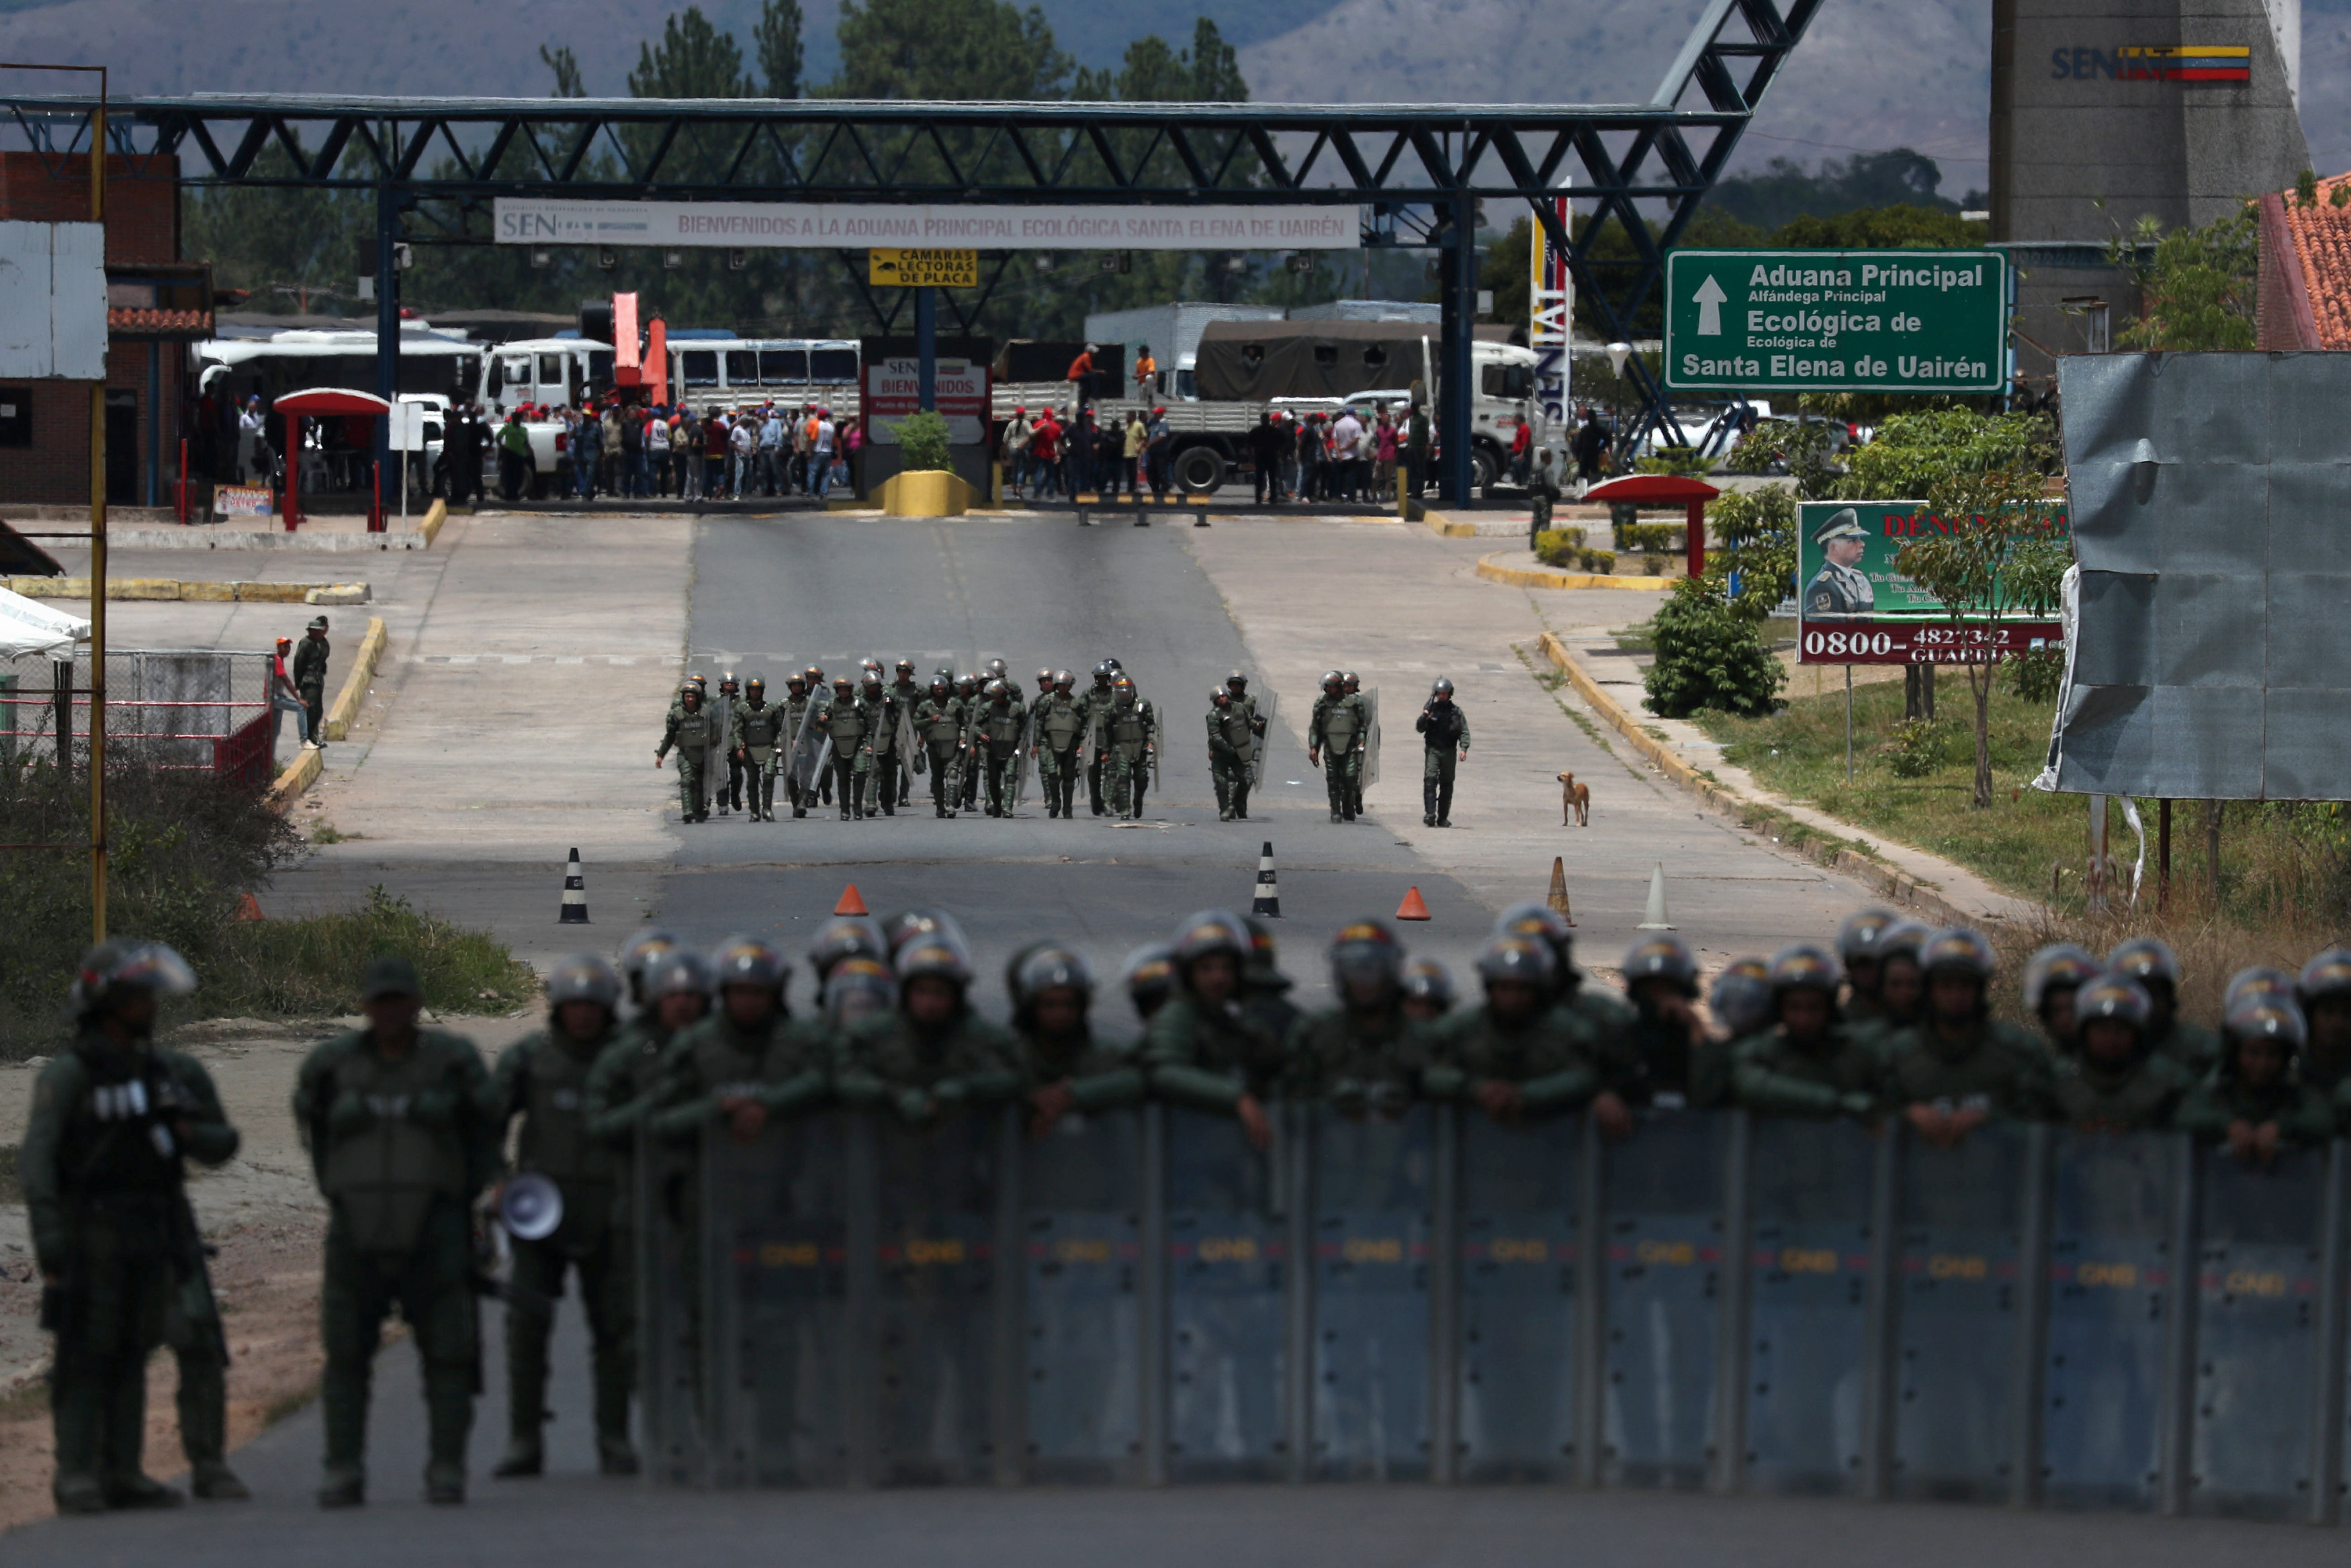 EN VIDEO: Funcionarios del régimen reprimieron a venezolanos en territorio brasileño el #23Feb